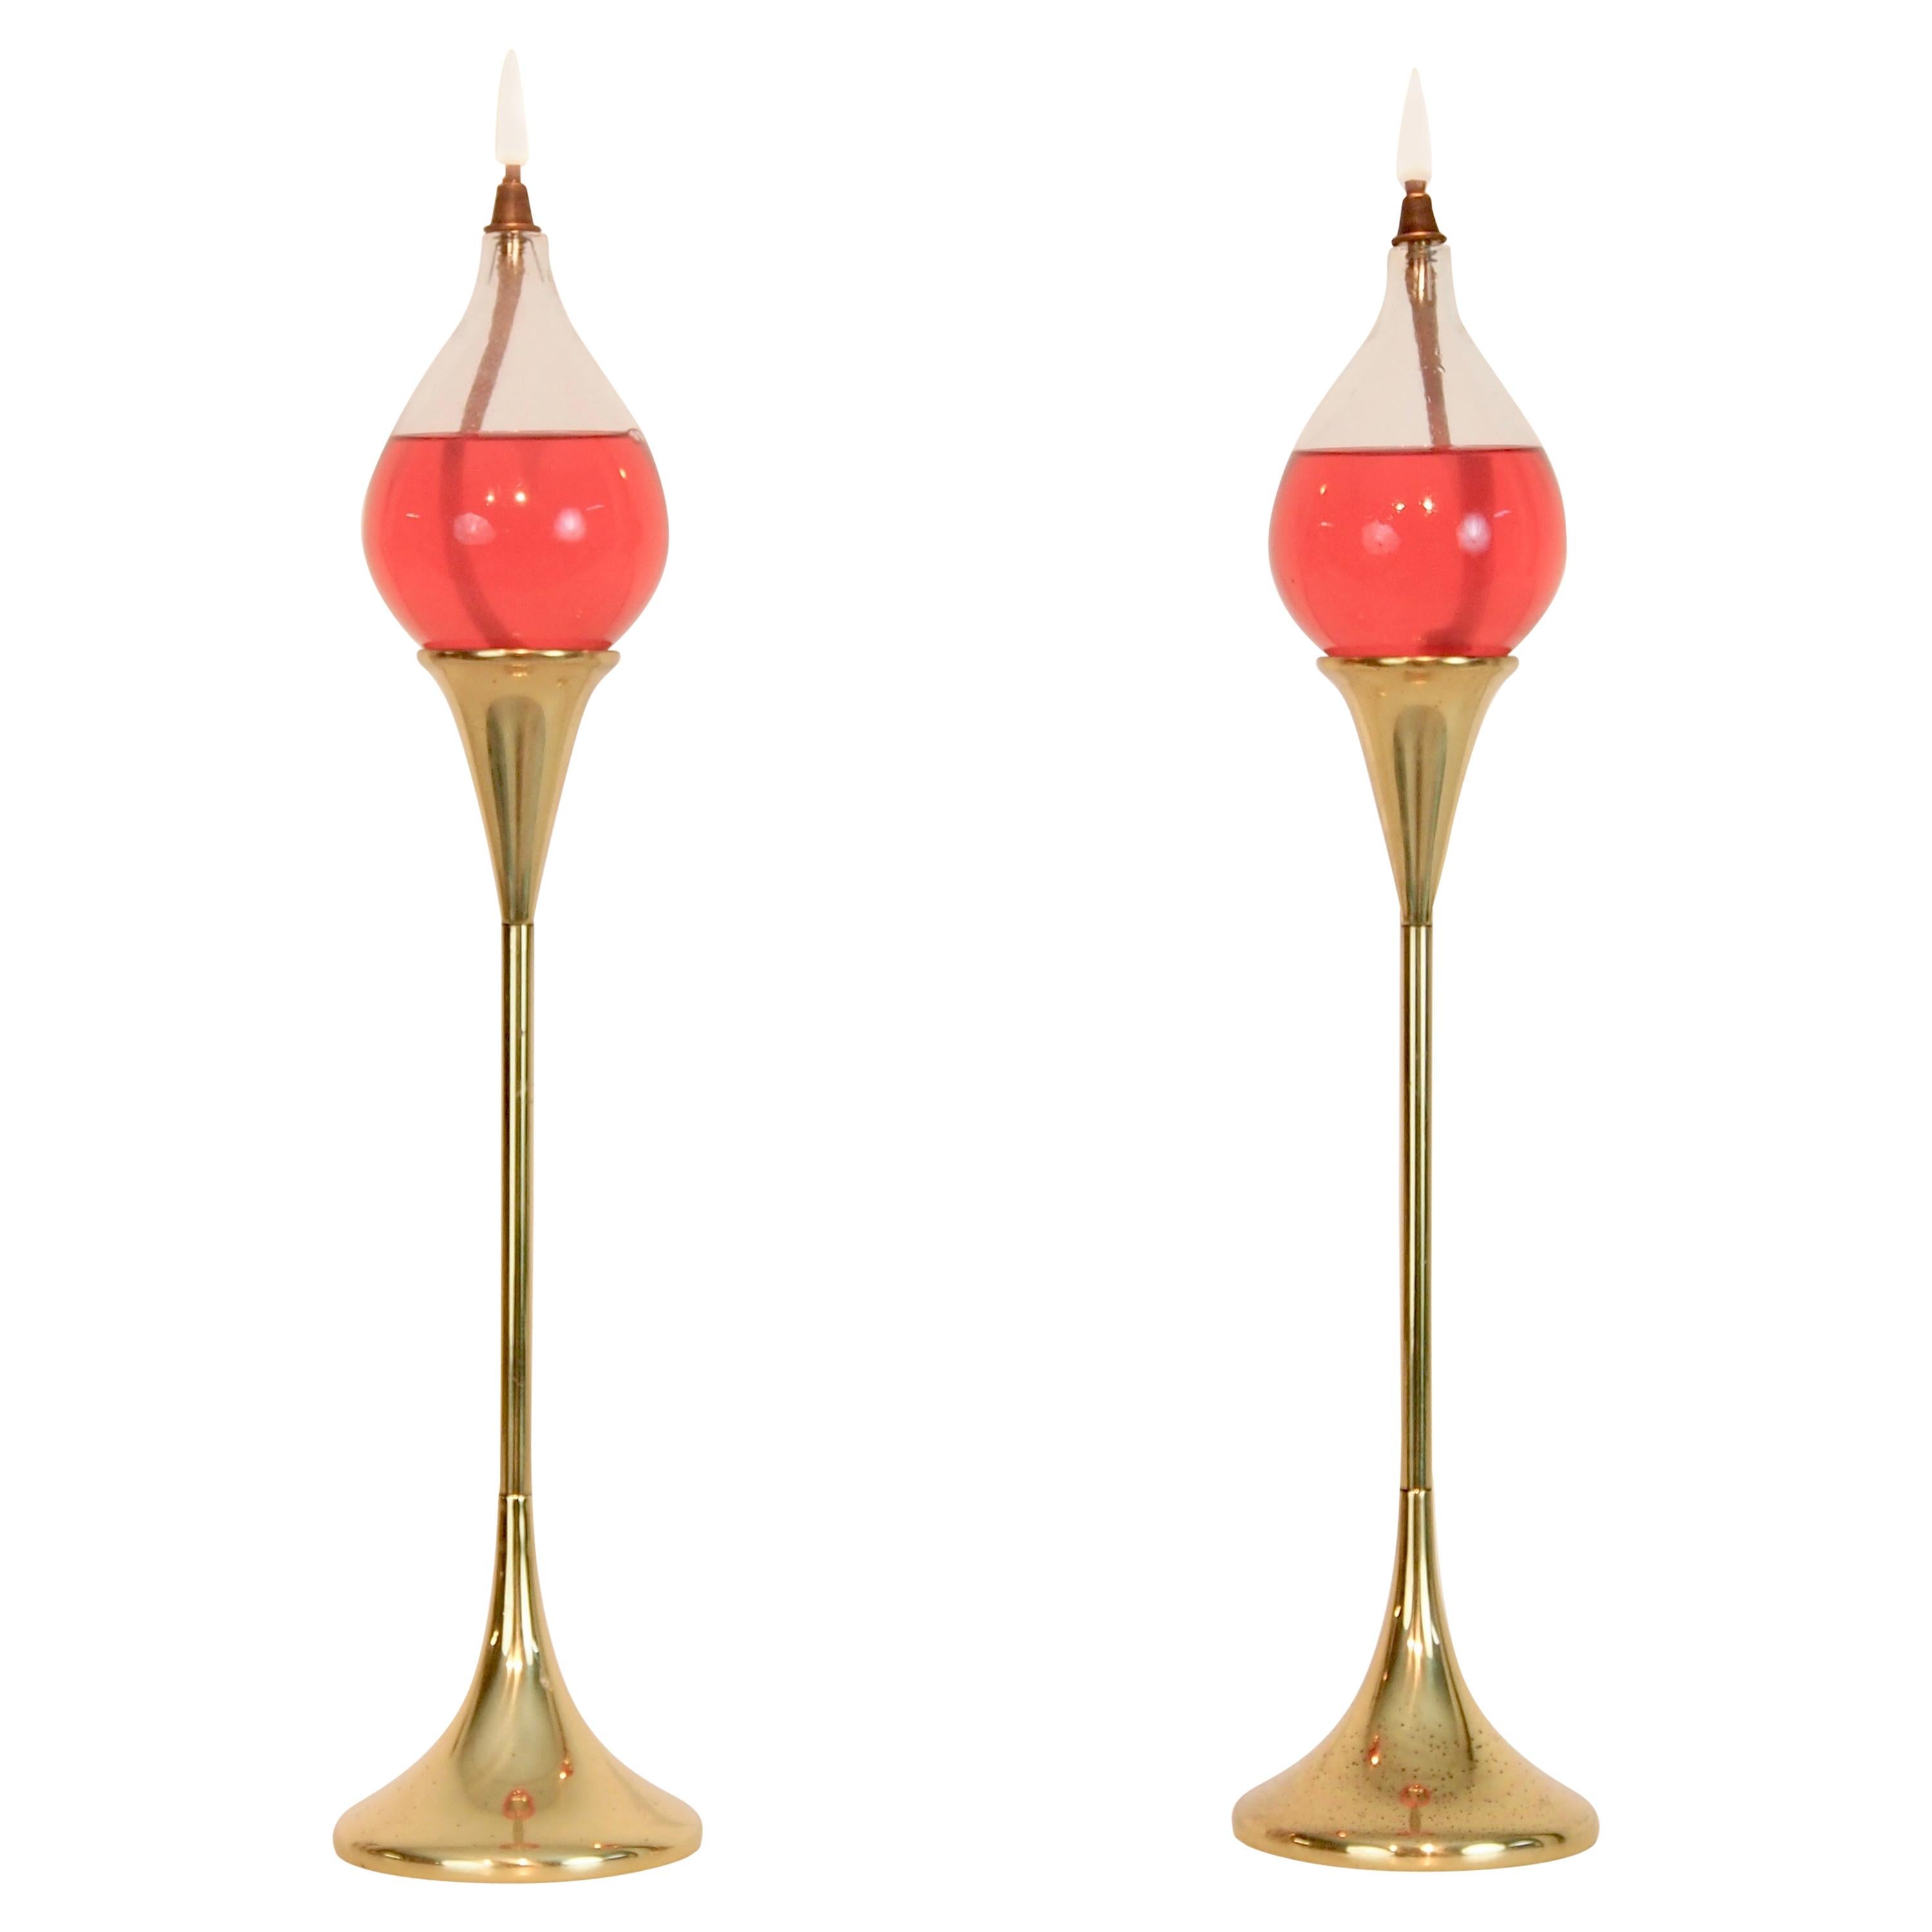 Pair of Vintage Oil Lamps "Tear Drops" by Freddie Andersen